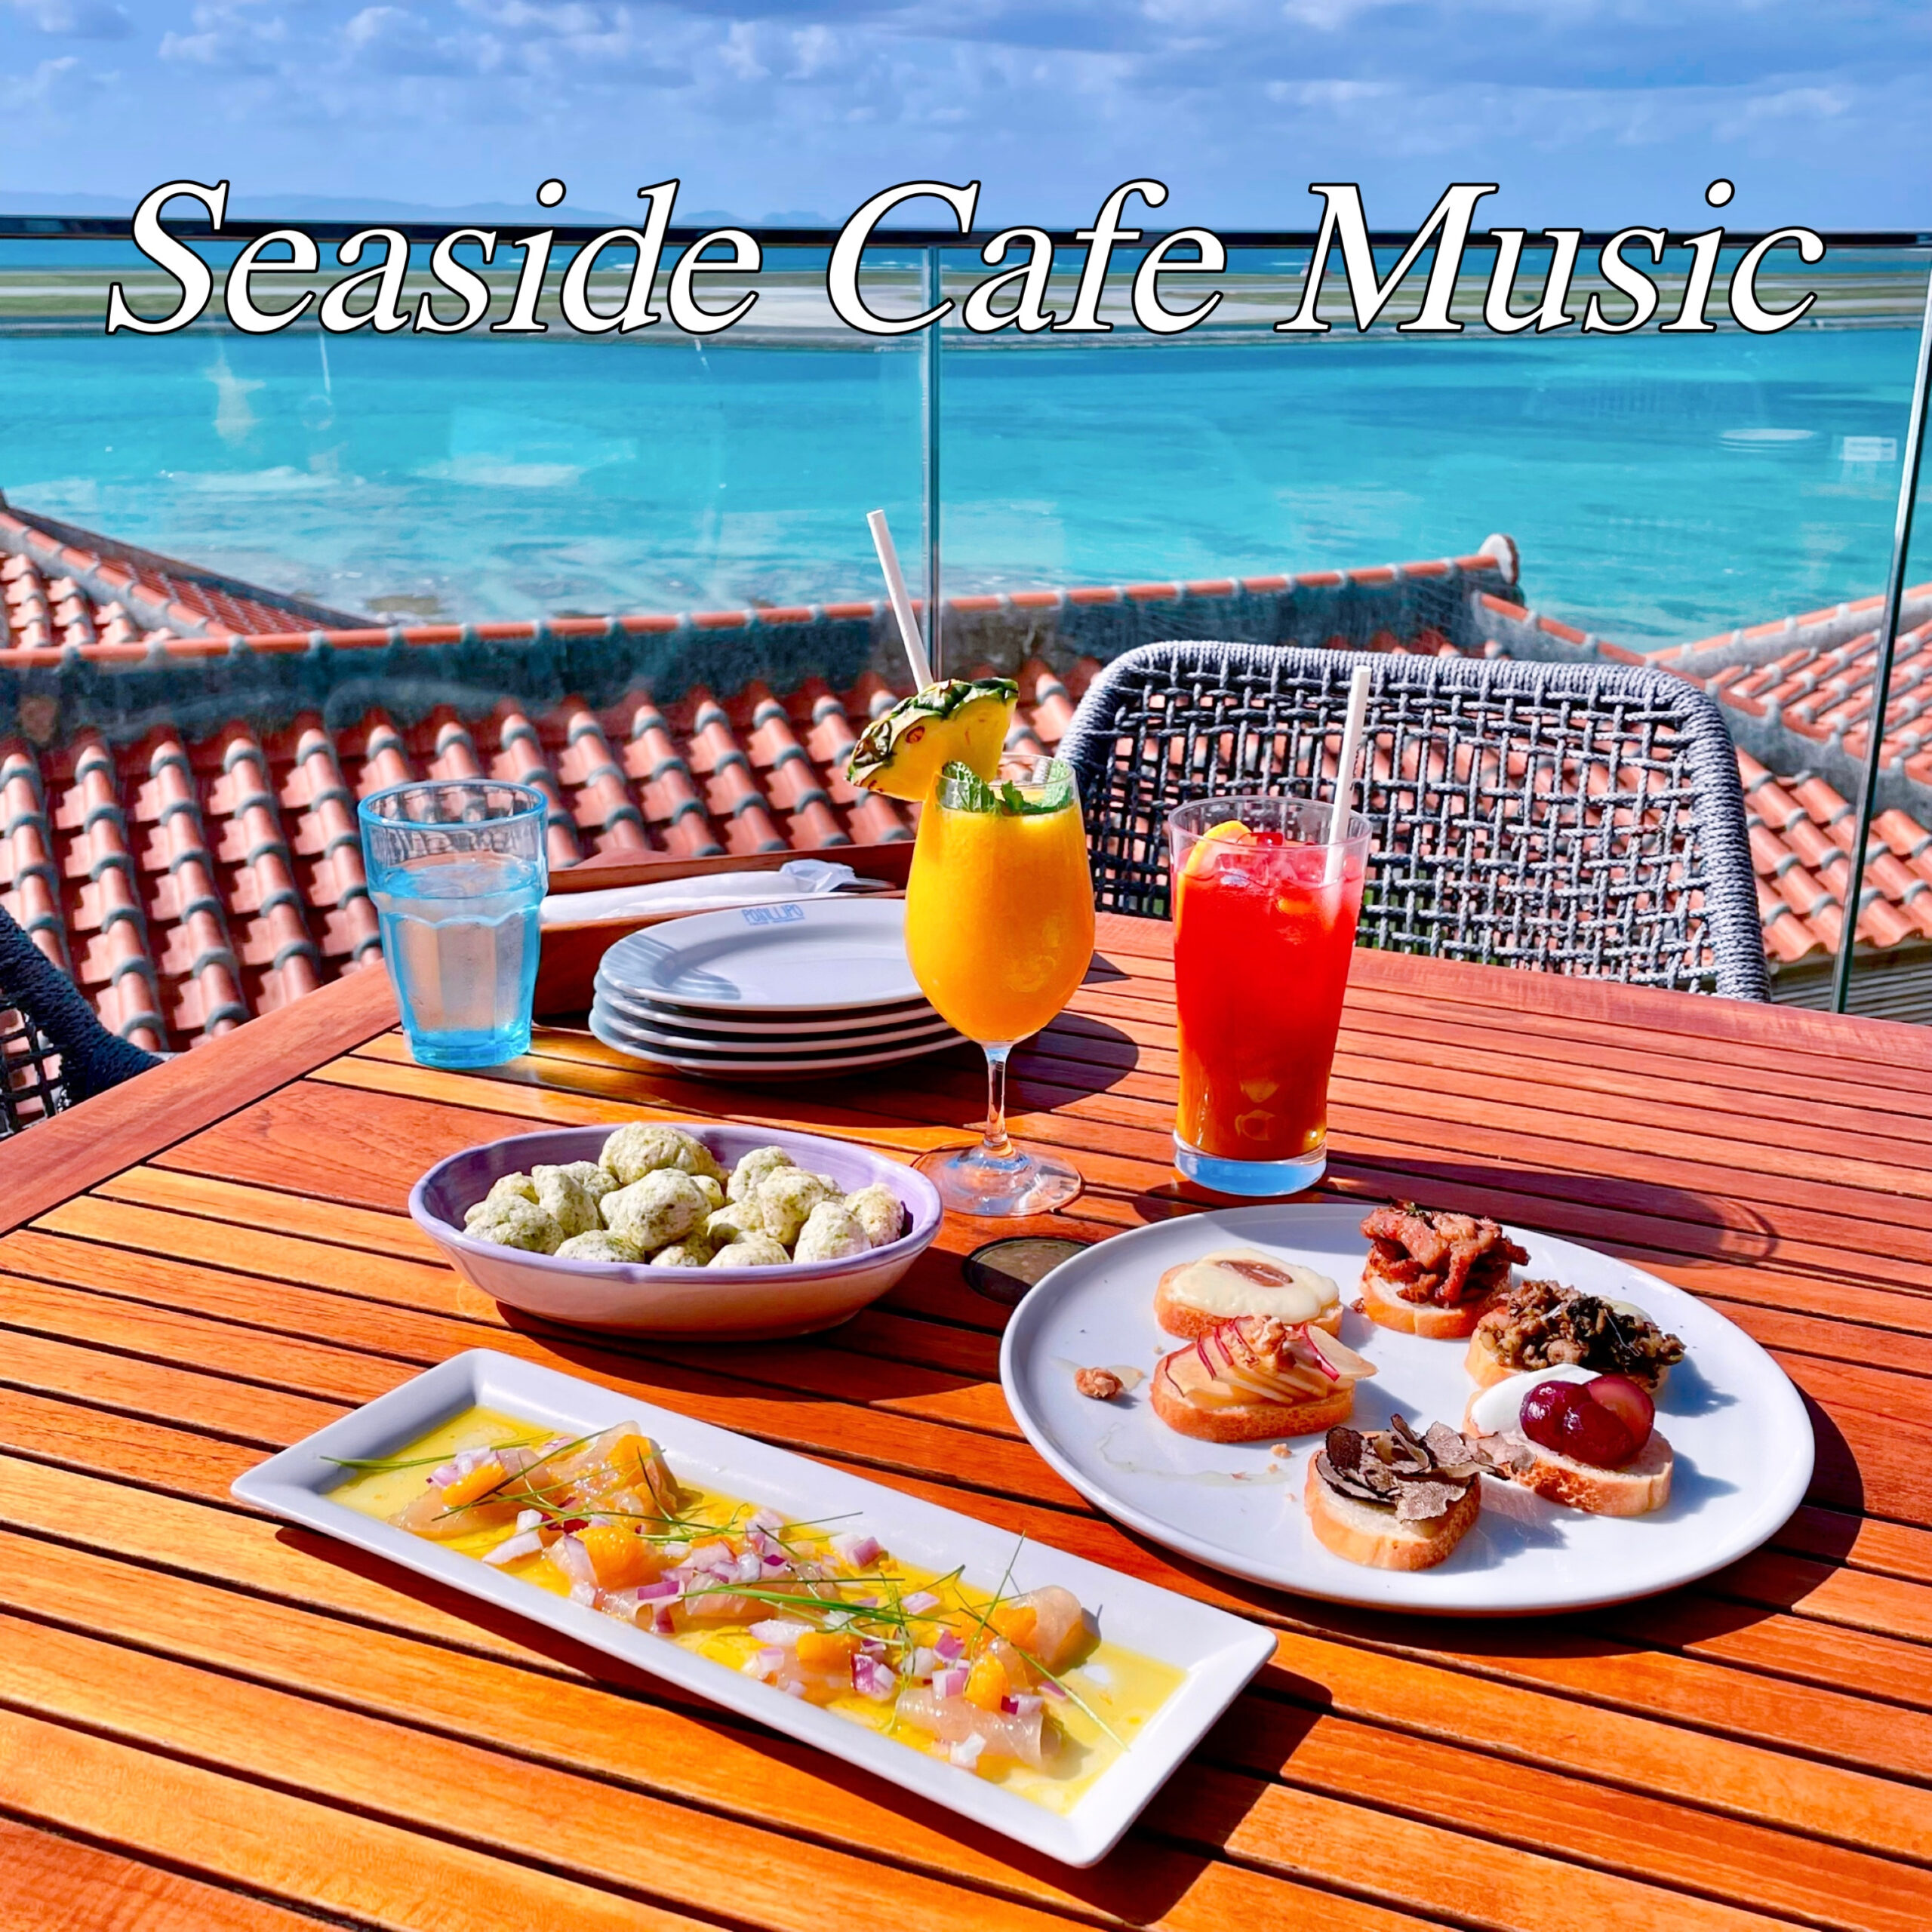 Seaside Cafe Music 海カフェギター 夏のリラックスBGM 作業用 サーフなギターでヒーリングタイム ドライブBGM